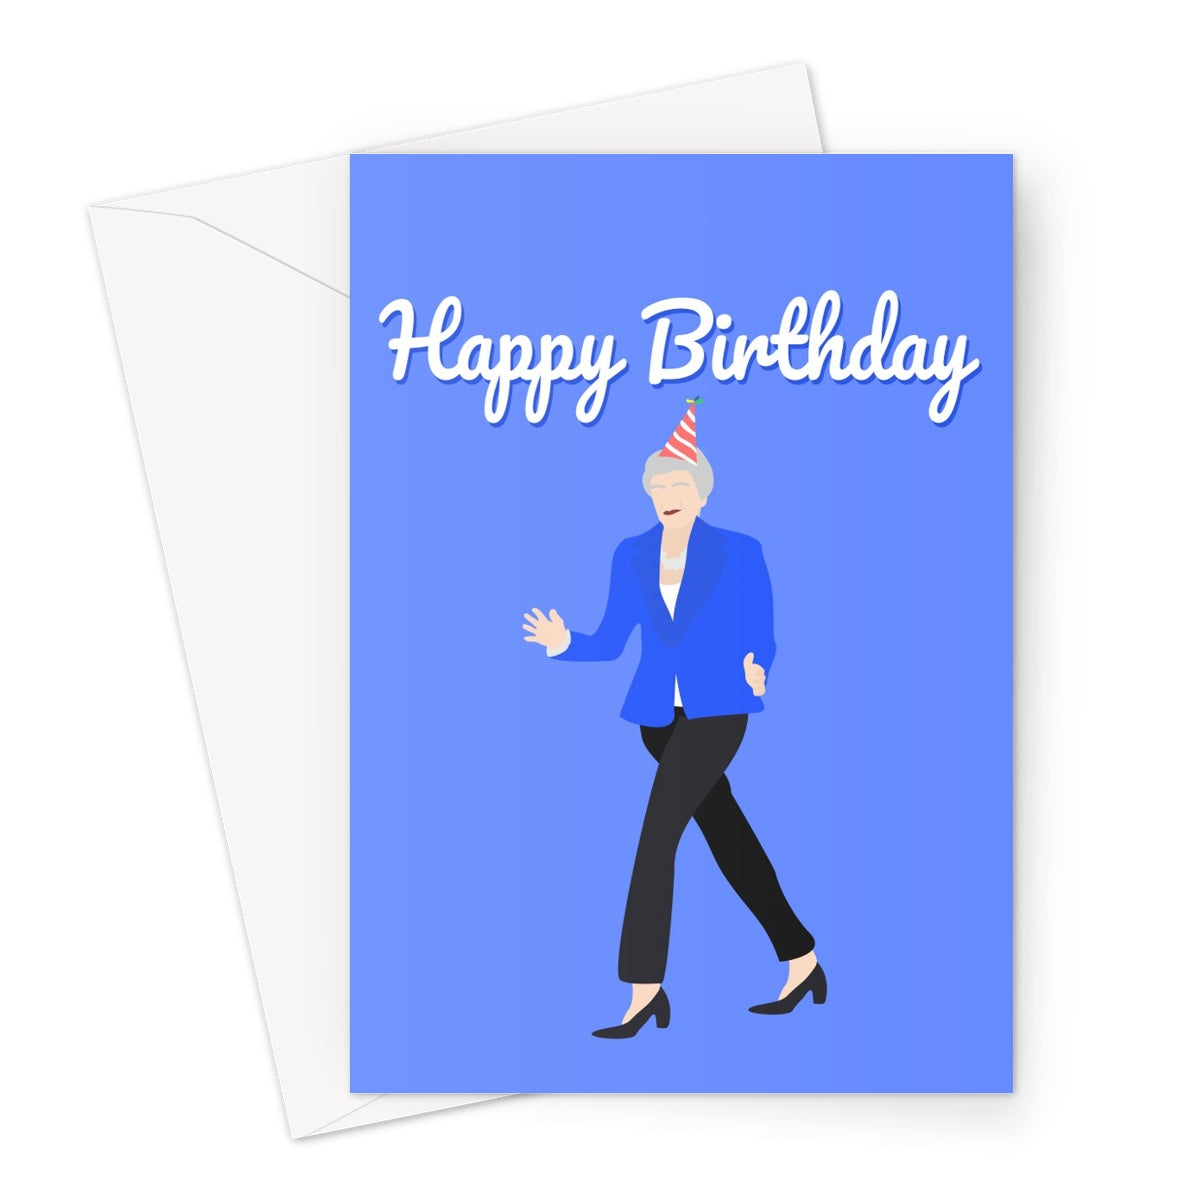 Theresa May Happy Birthday Text Card Greeting Card